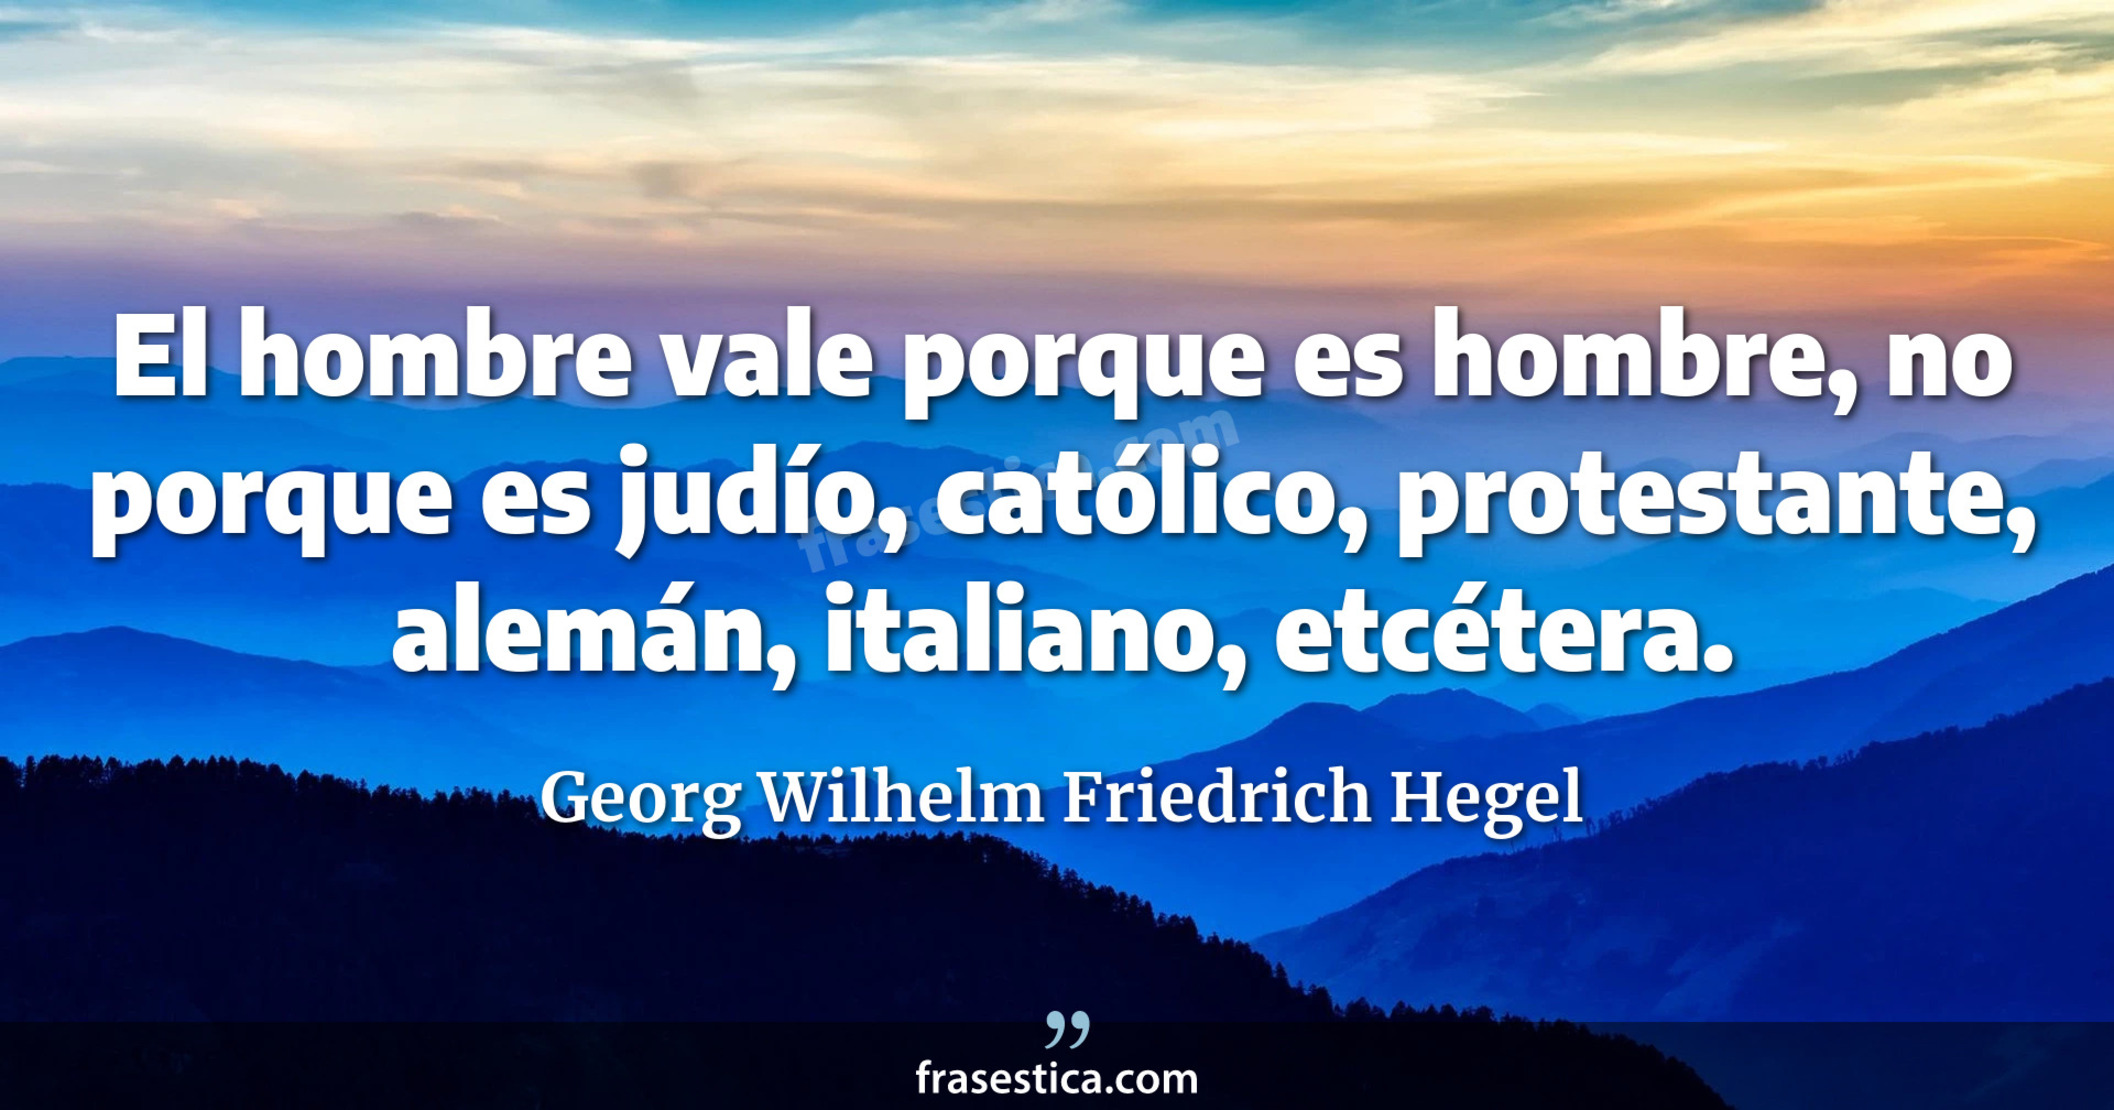 El hombre vale porque es hombre, no porque es judío, católico, protestante, alemán, italiano, etcétera. - Georg Wilhelm Friedrich Hegel